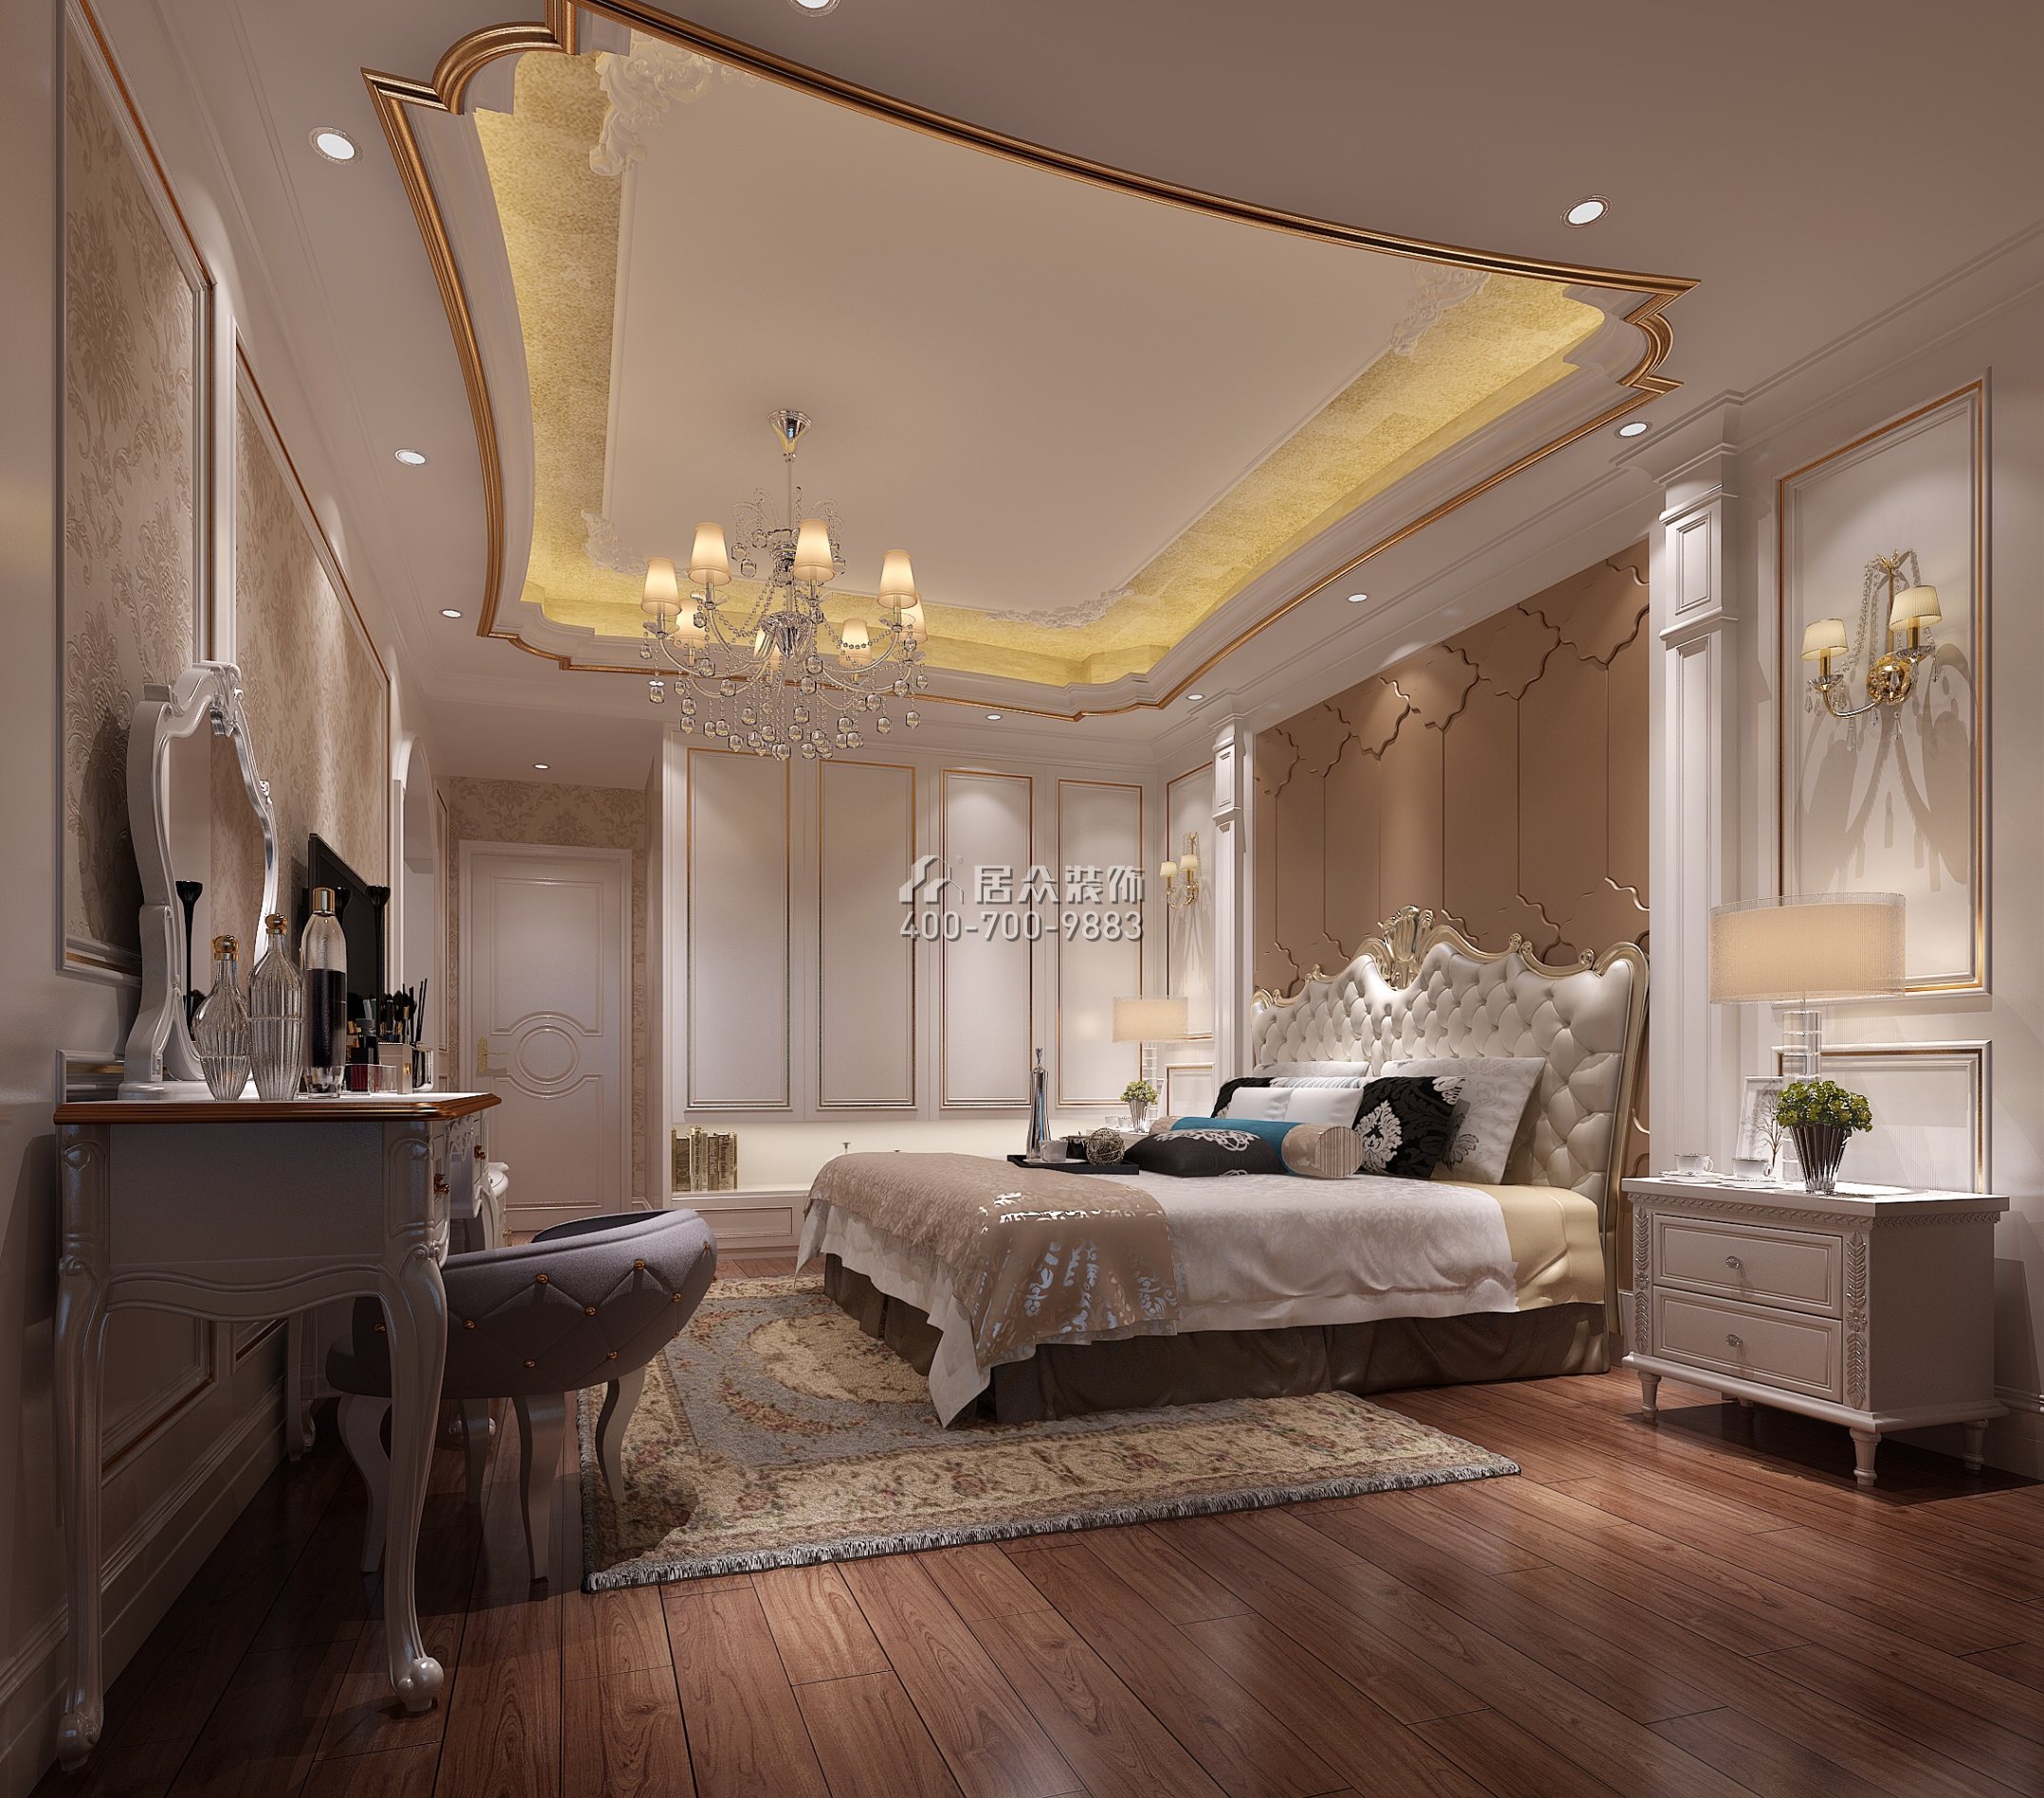 廣州華發四季182平方米歐式風格平層戶型臥室裝修效果圖